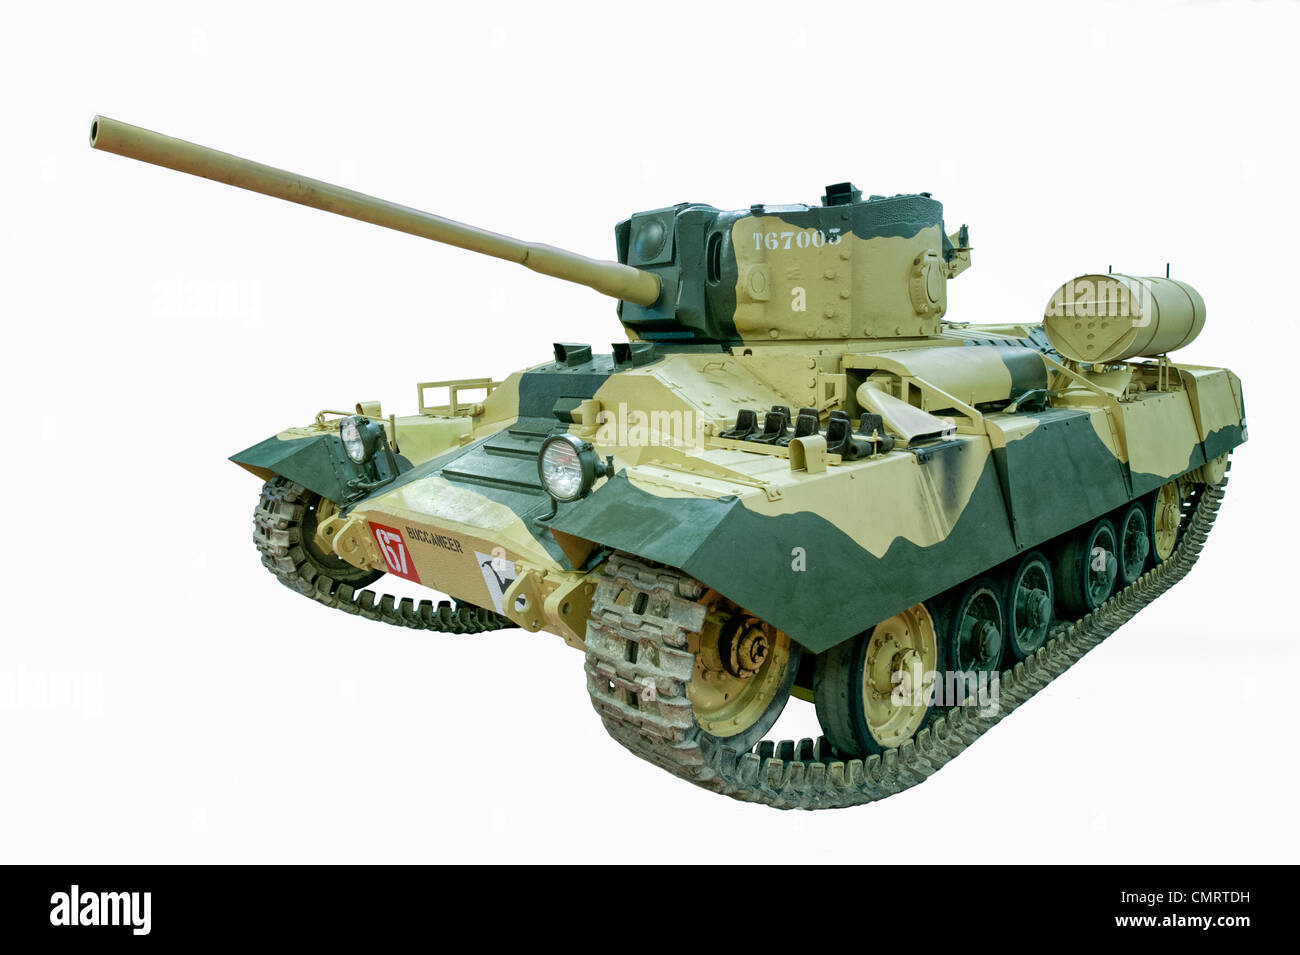 Un coupé de Valentine Tank largement utilisés par les Britanniques et les forces alliées pendant la SECONDE GUERRE MONDIALE Banque D'Images